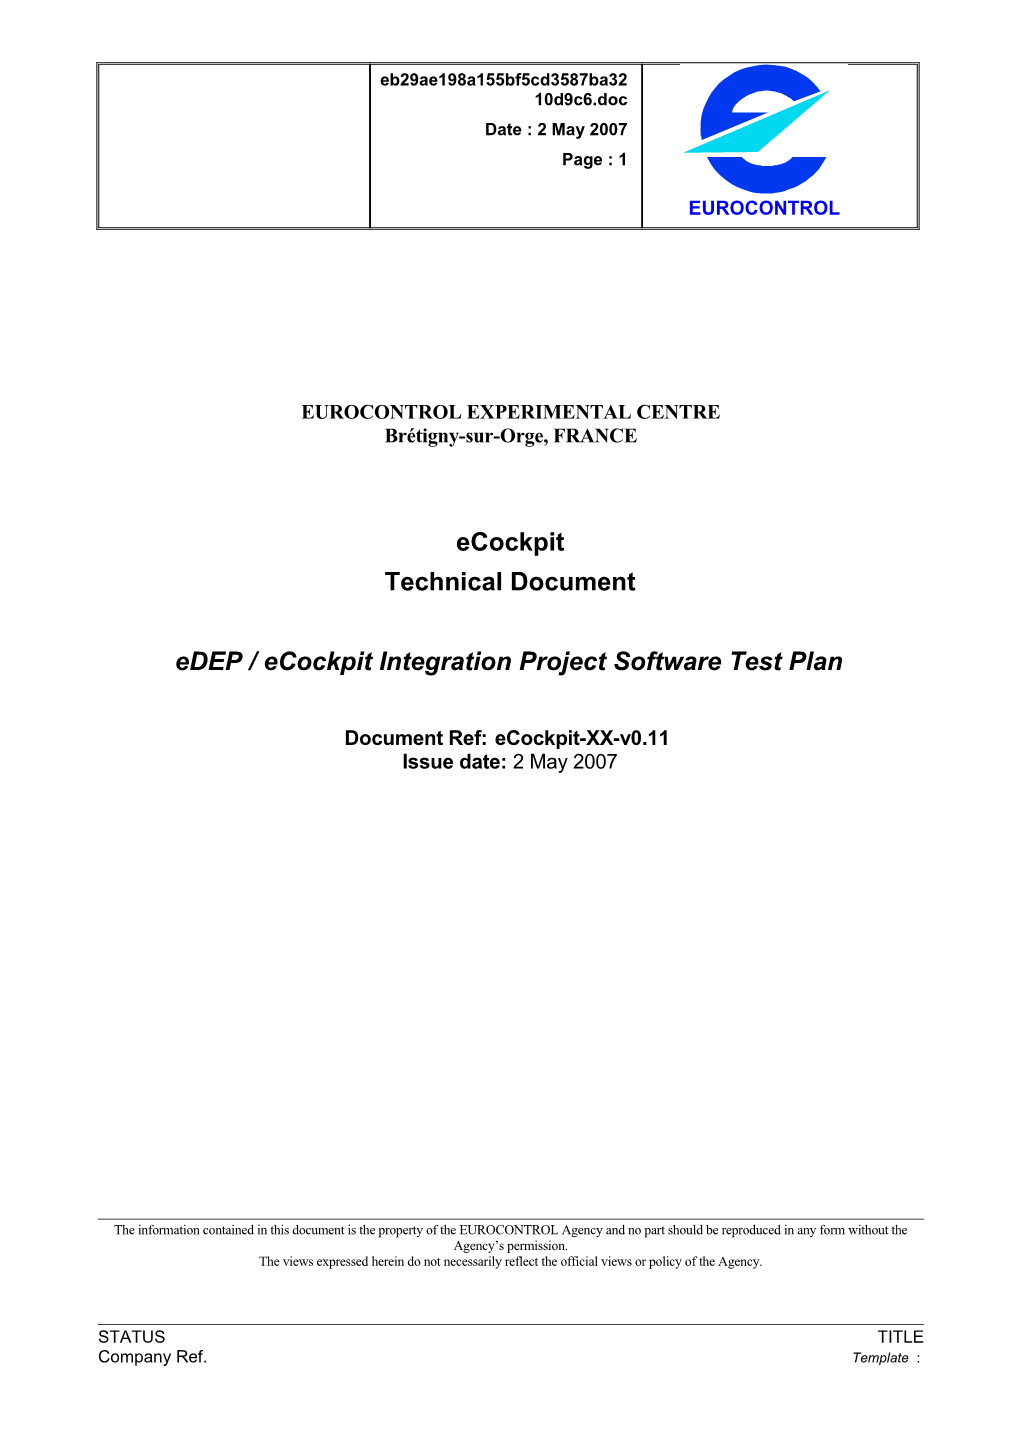 Edep / Ecockpit Integration Project Software Test Plan